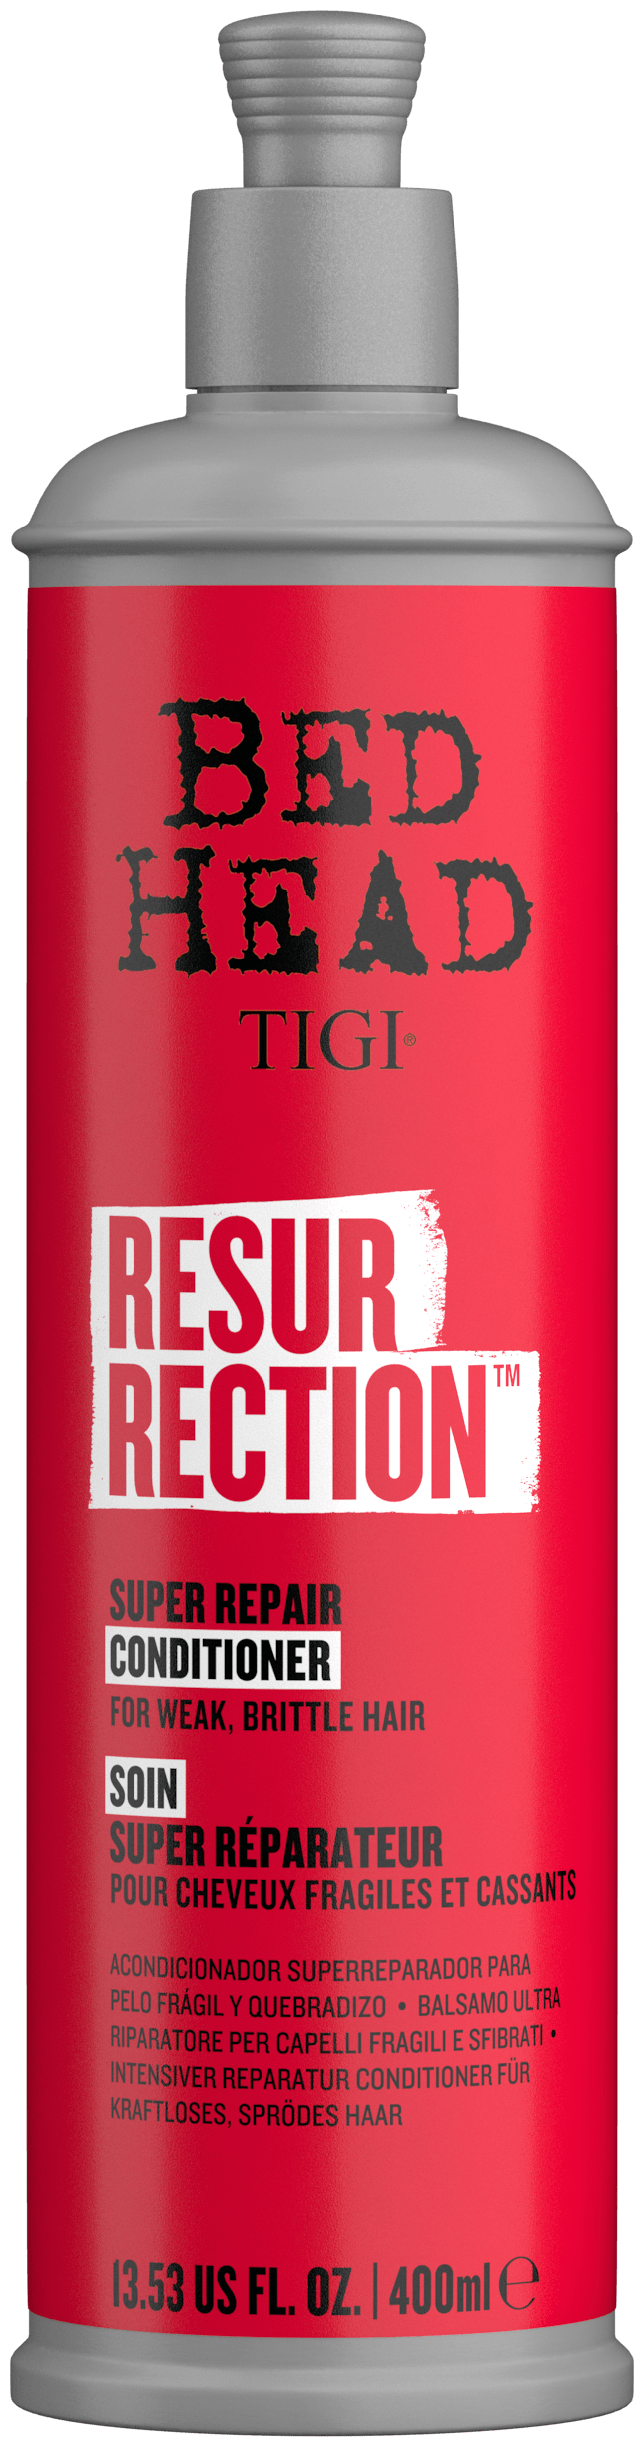 TIGI кондиционер Resurrection для сильно поврежденных волос, 400 мл